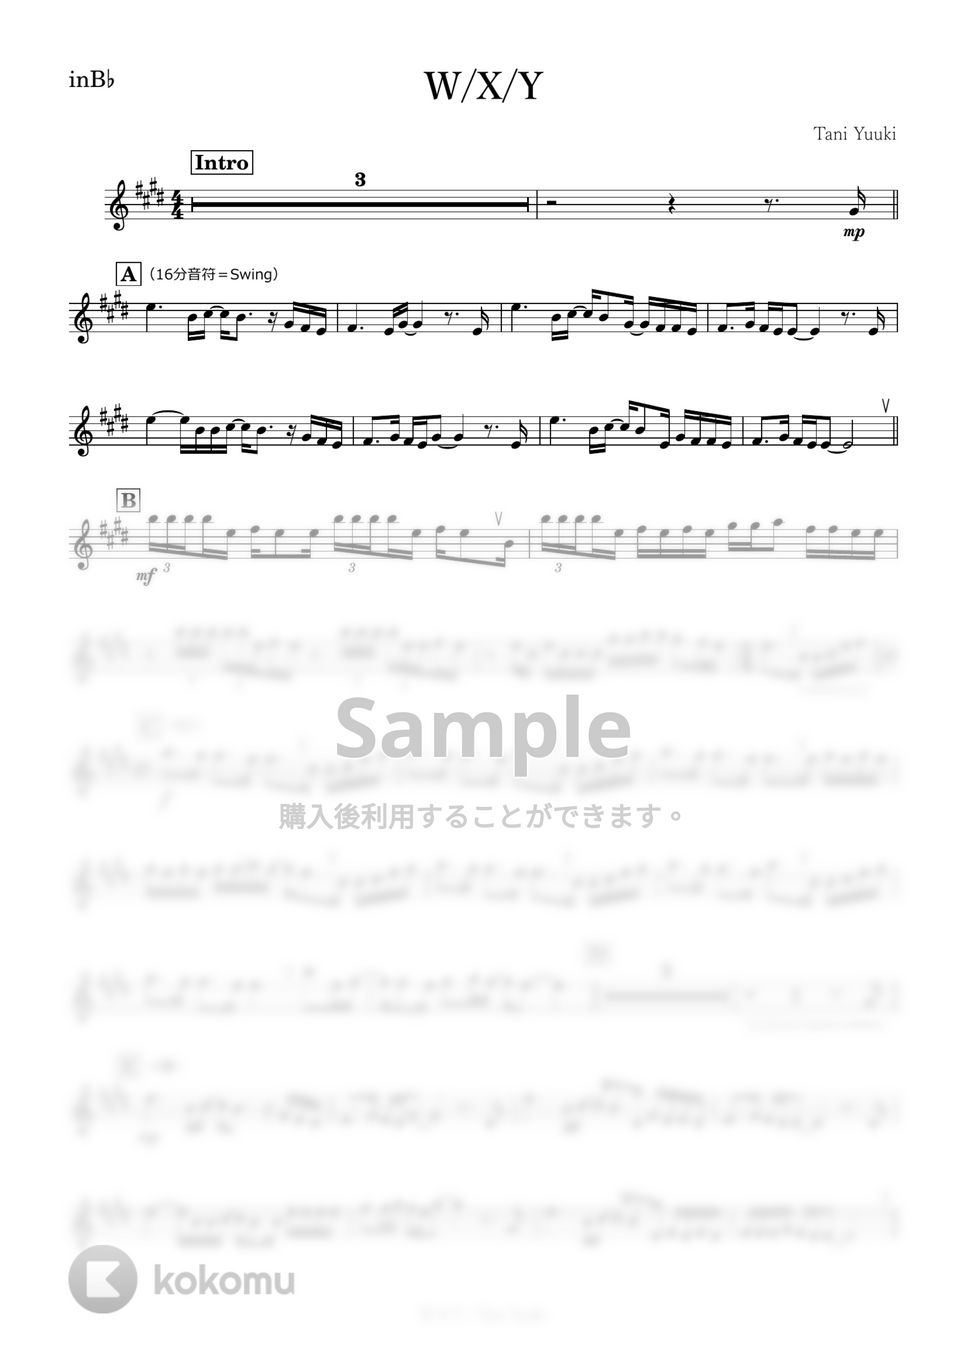 Tani Yuuki - W/X/Y (B♭) by kanamusic